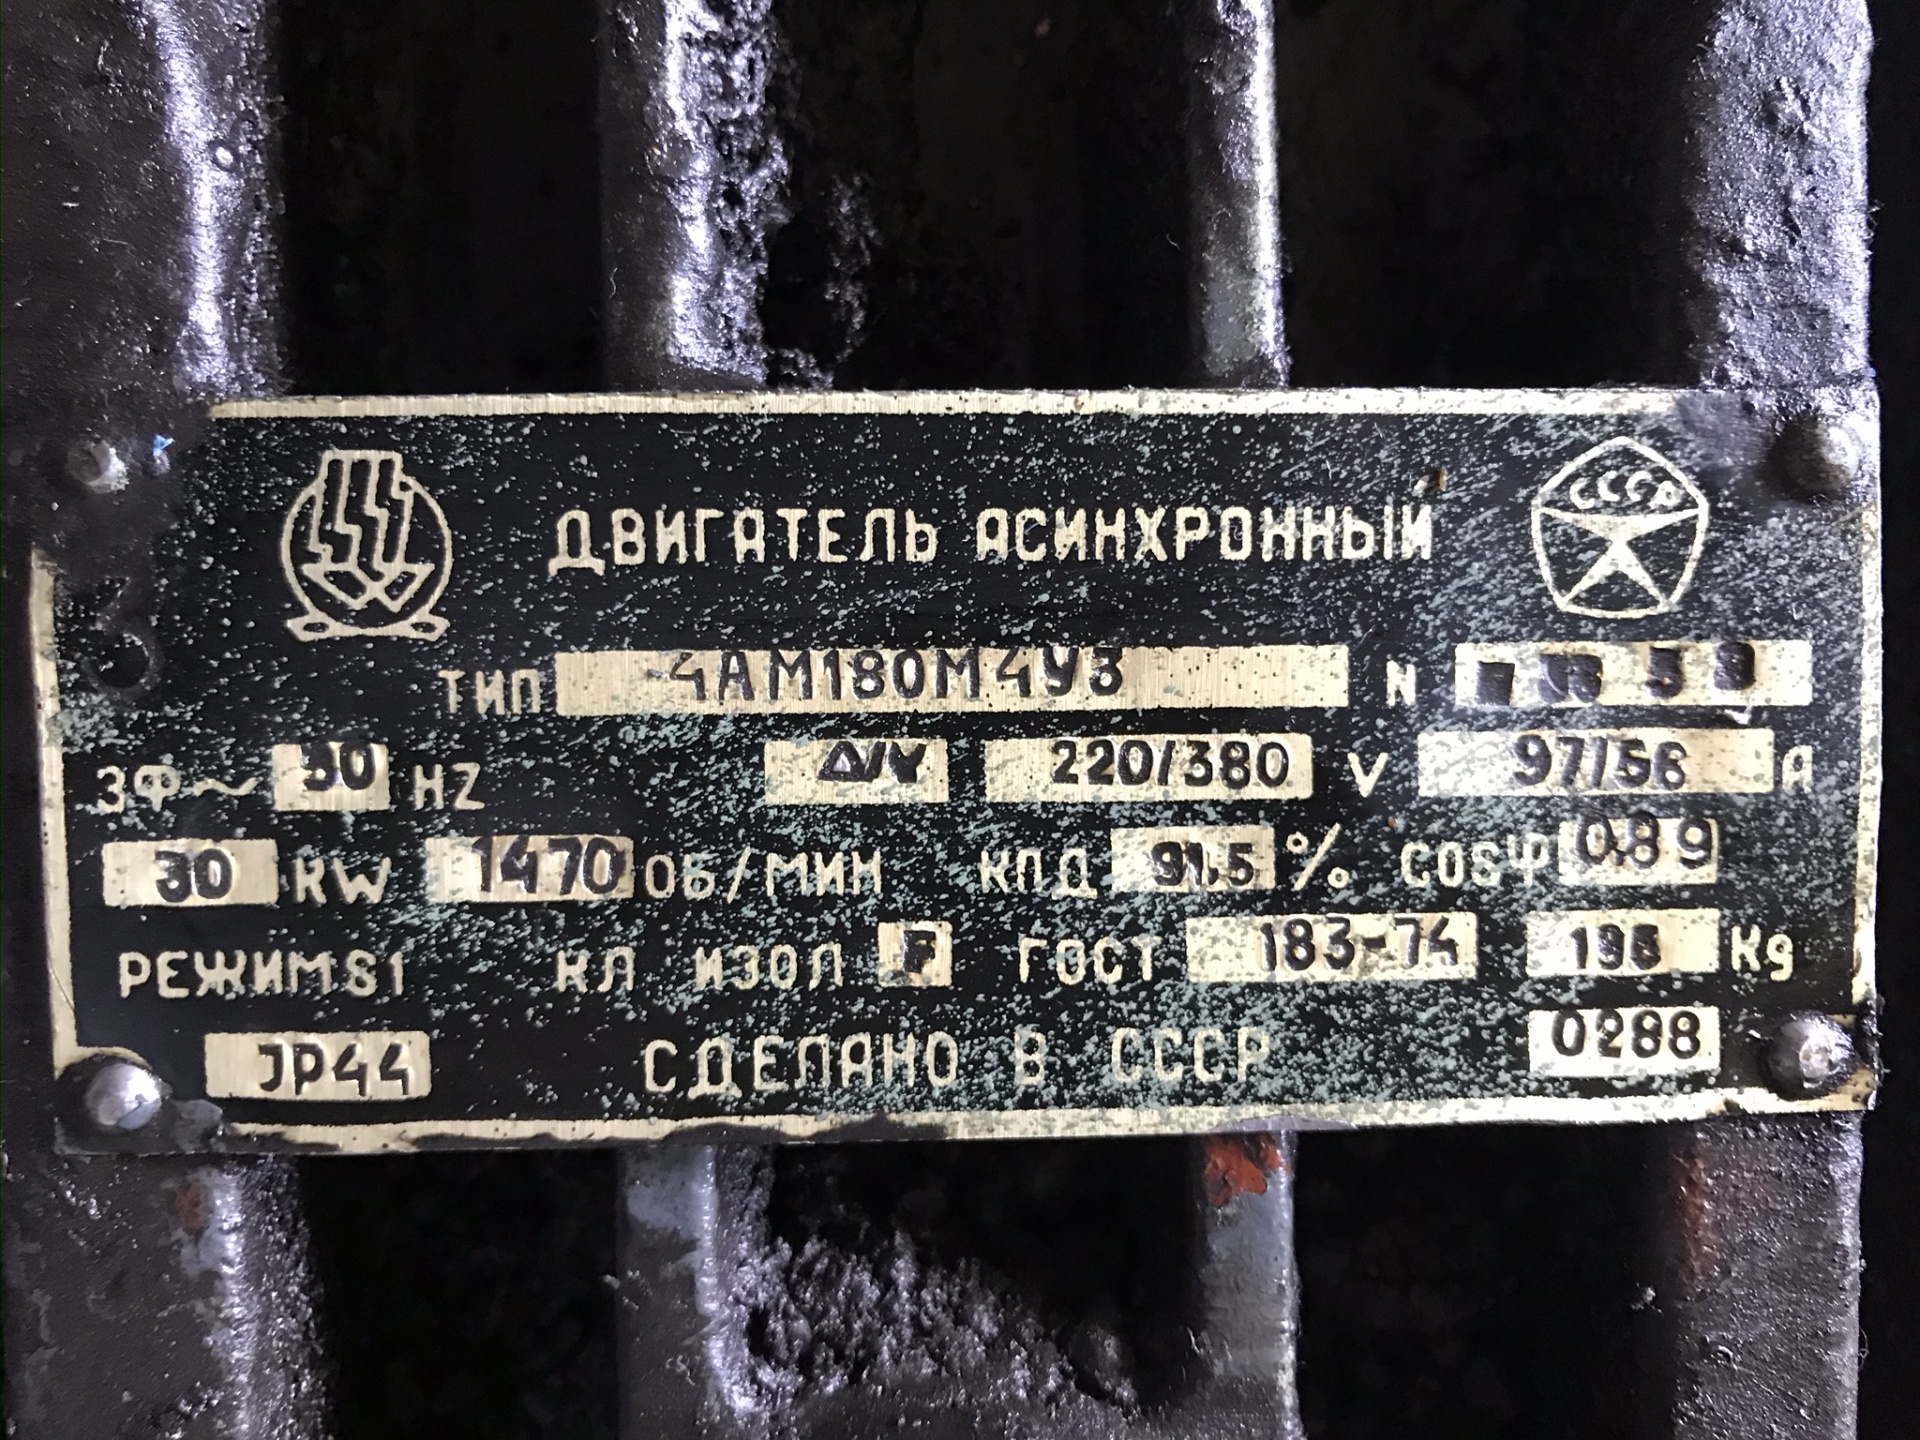 Двигатель асинхронный  Б/У в Барнауле - Биржа оборудования ProСтанки